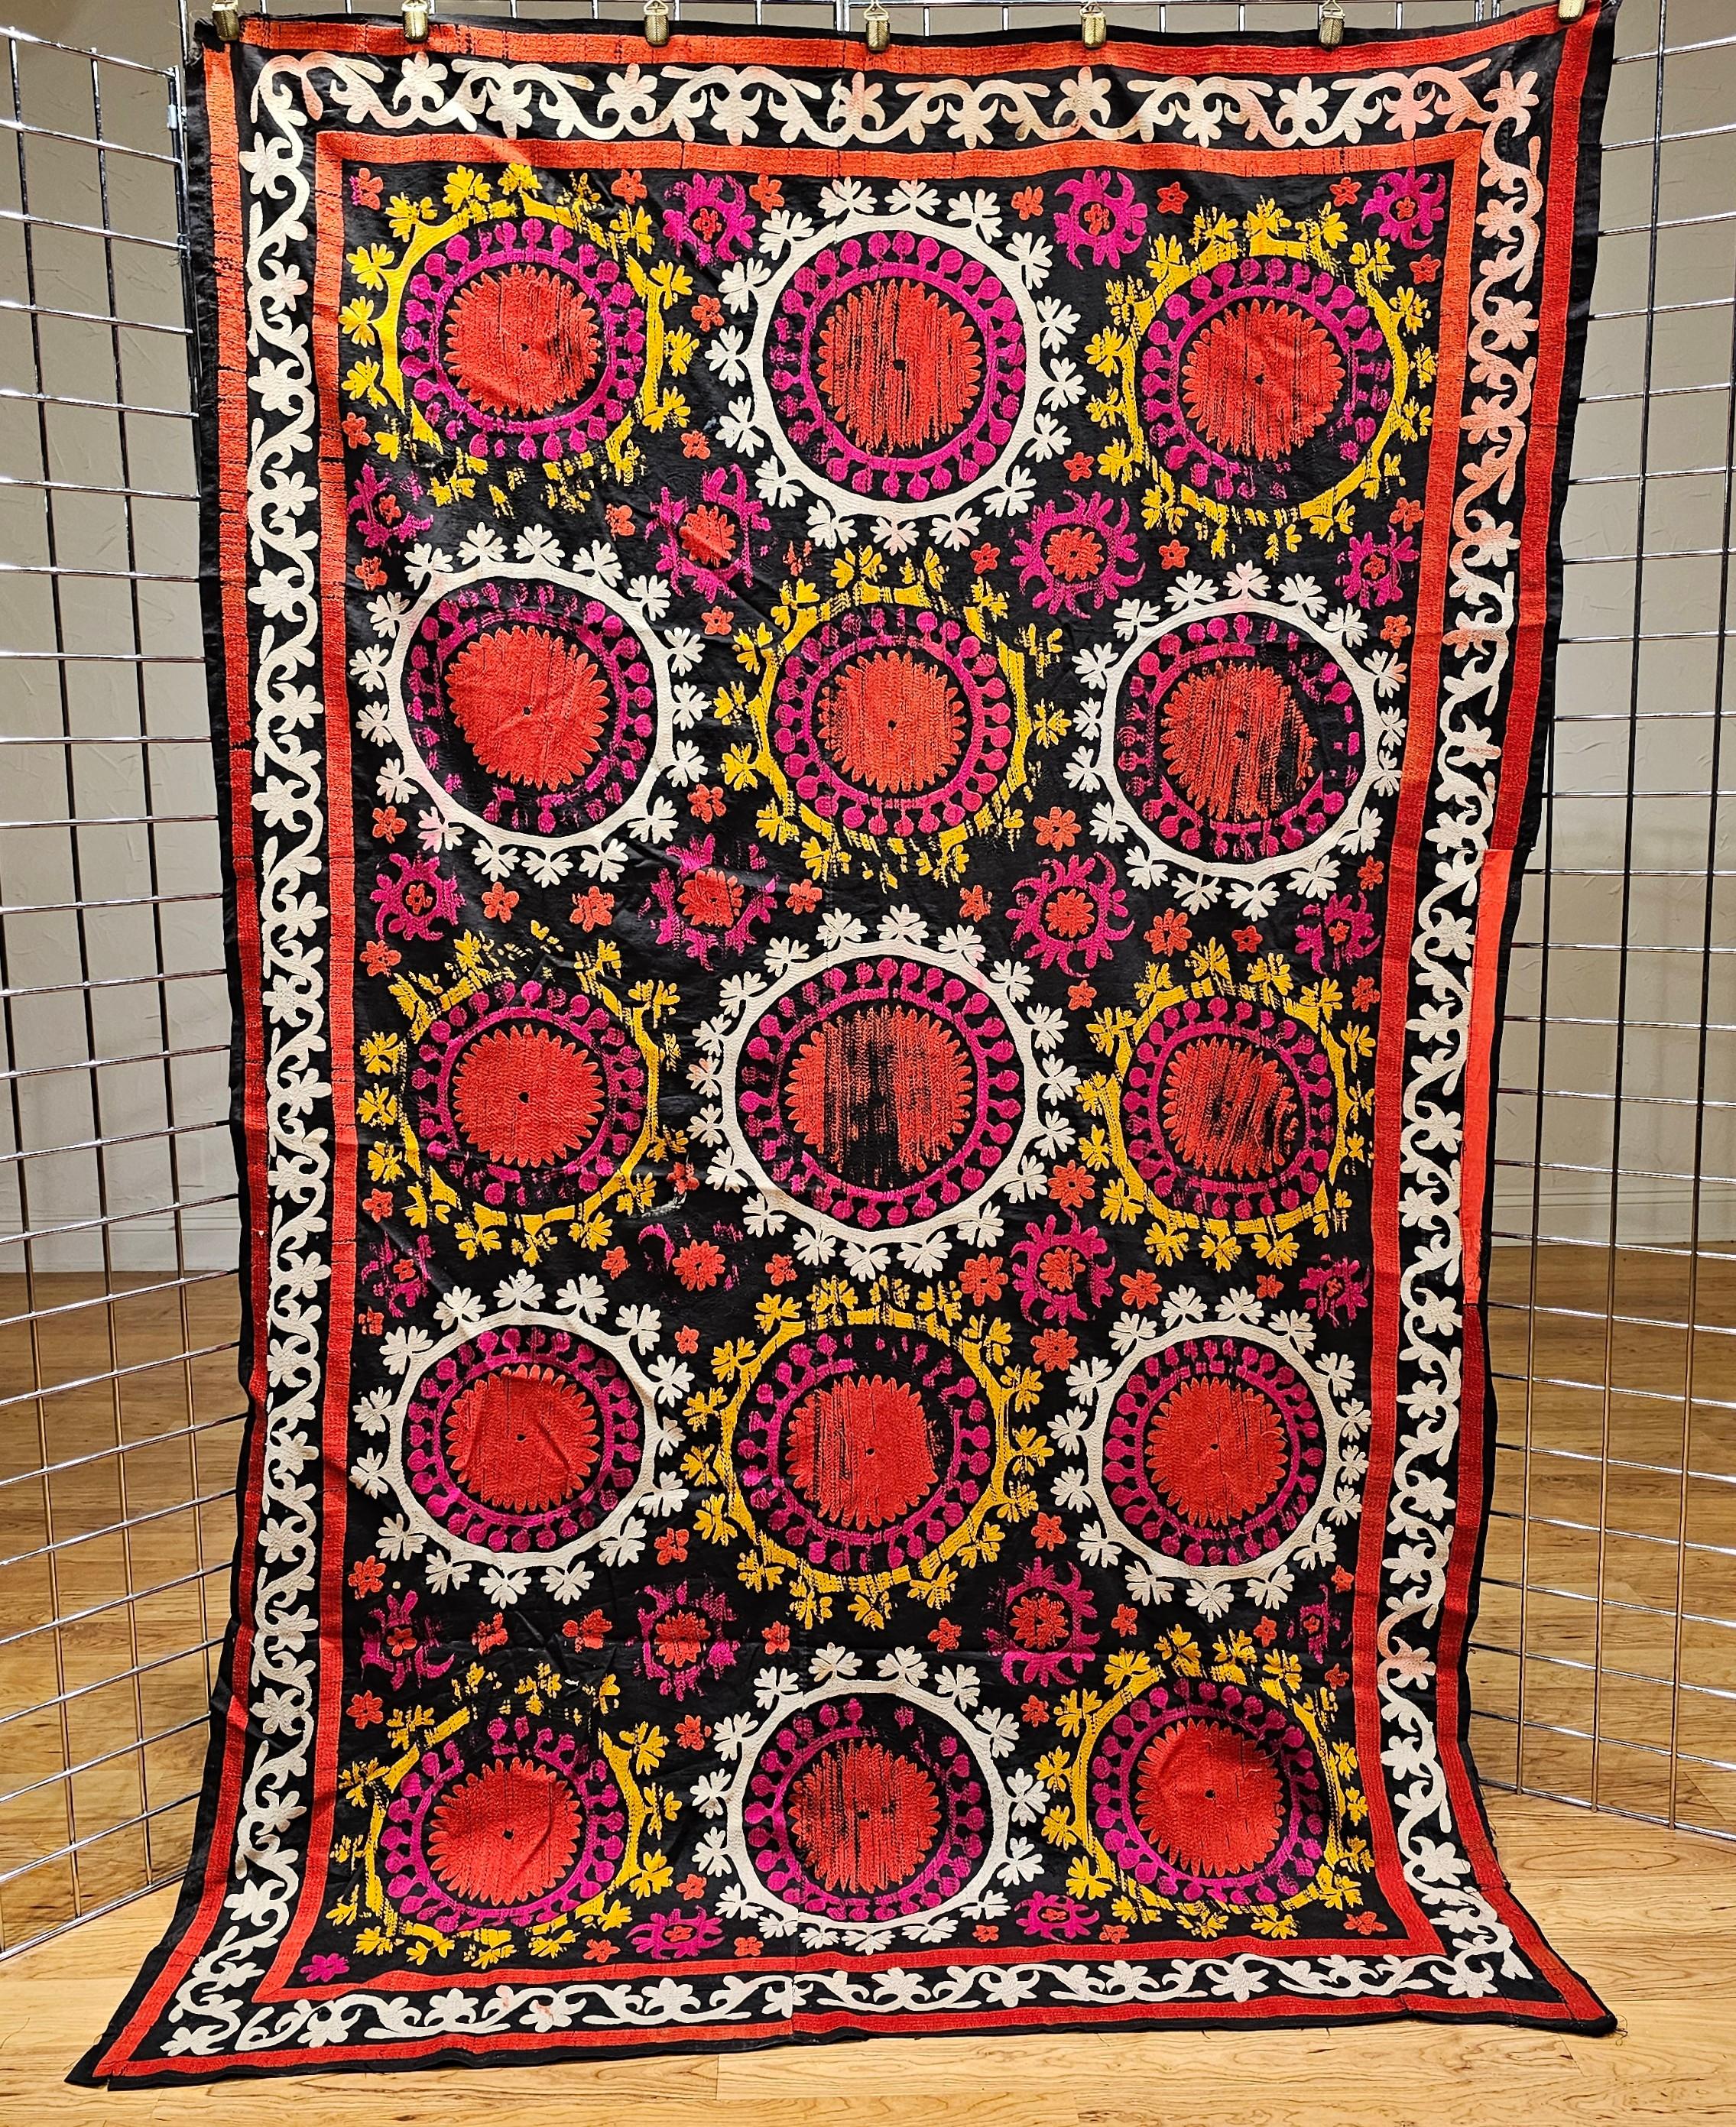 Handgefertigte Vintage-Susani-Seidenstickerei aus Usbekistan in Zentralasien mit schwarzem Baumwollgrund und Seidenmustern in Schwarz, Elfenbein, Gelb und Rot.  Das Design jedes Paneels besteht aus fein seidengestickten Blumenmustern in leuchtenden